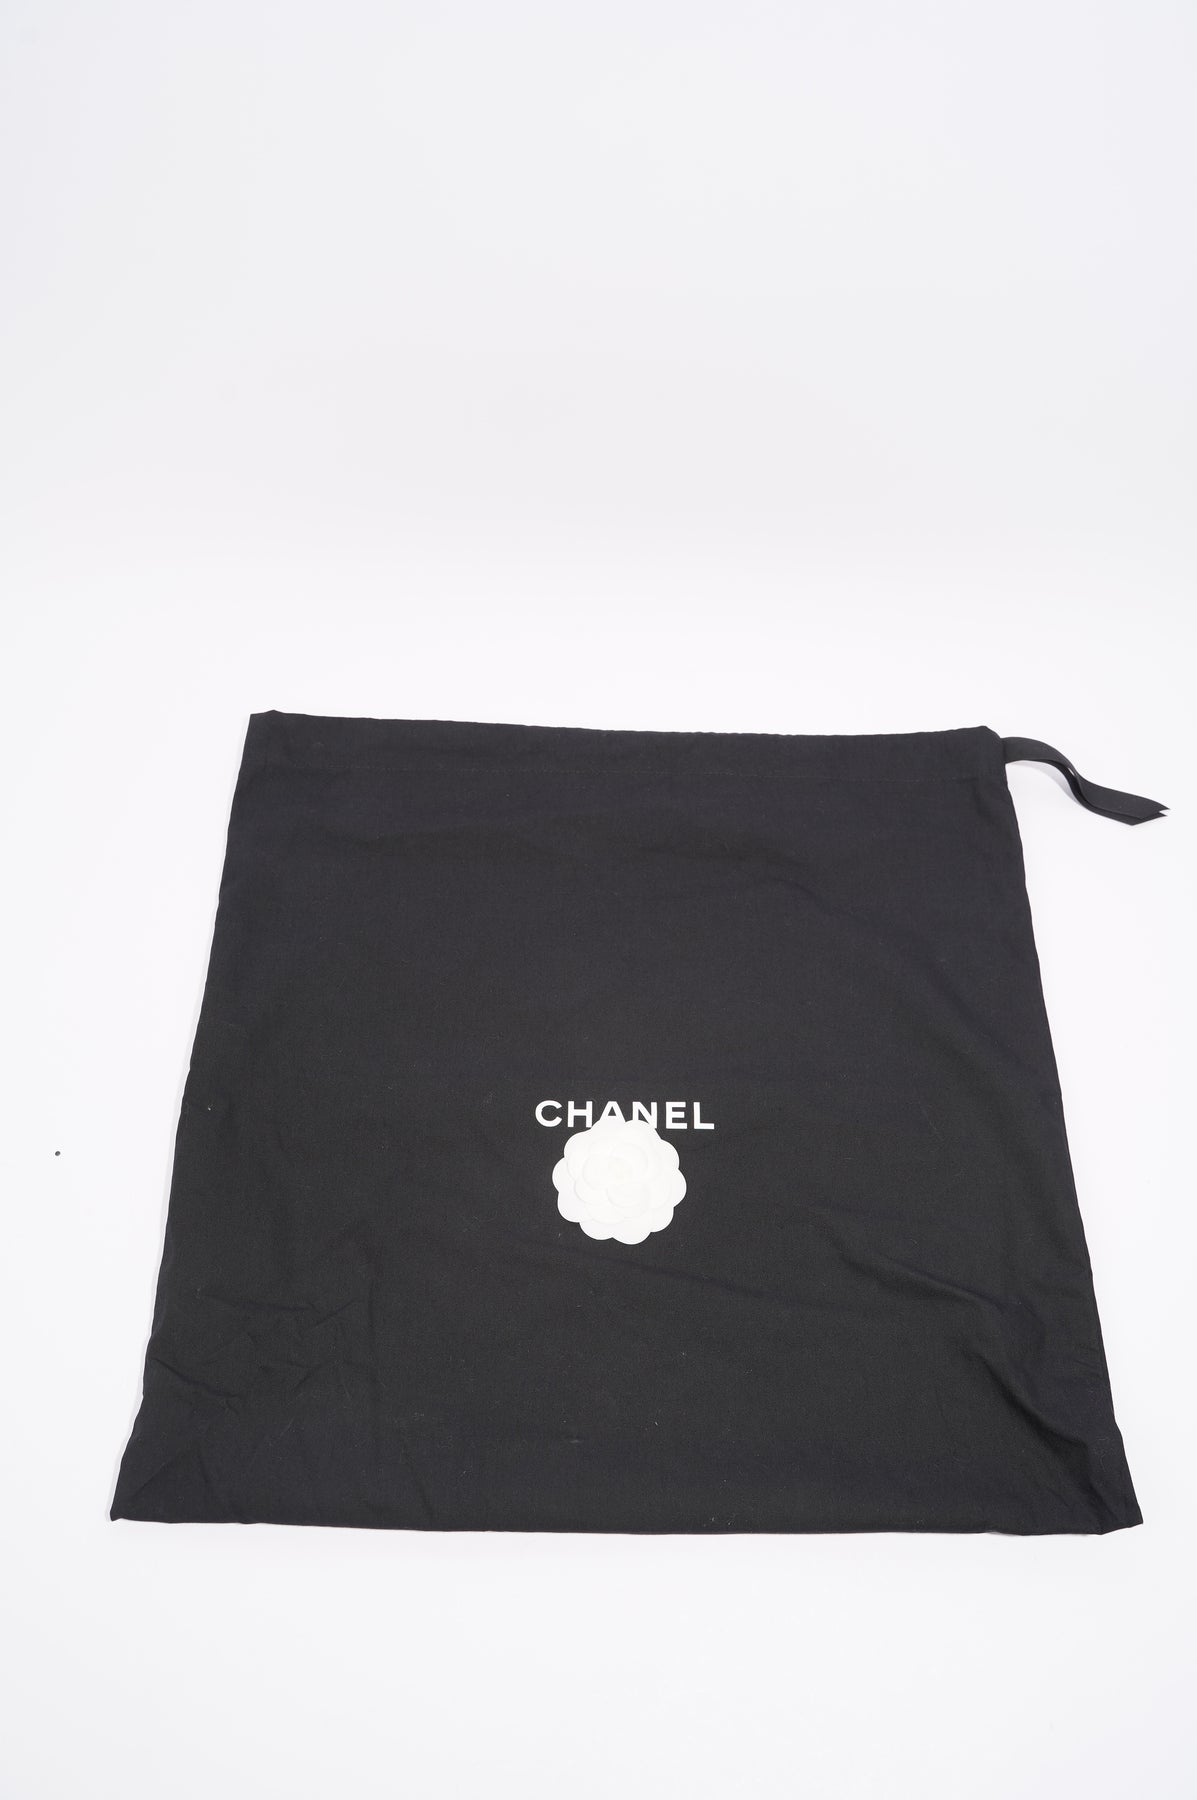 Rare 15S Chanel So Black Chevron Classic Large Shopper Flap Tote